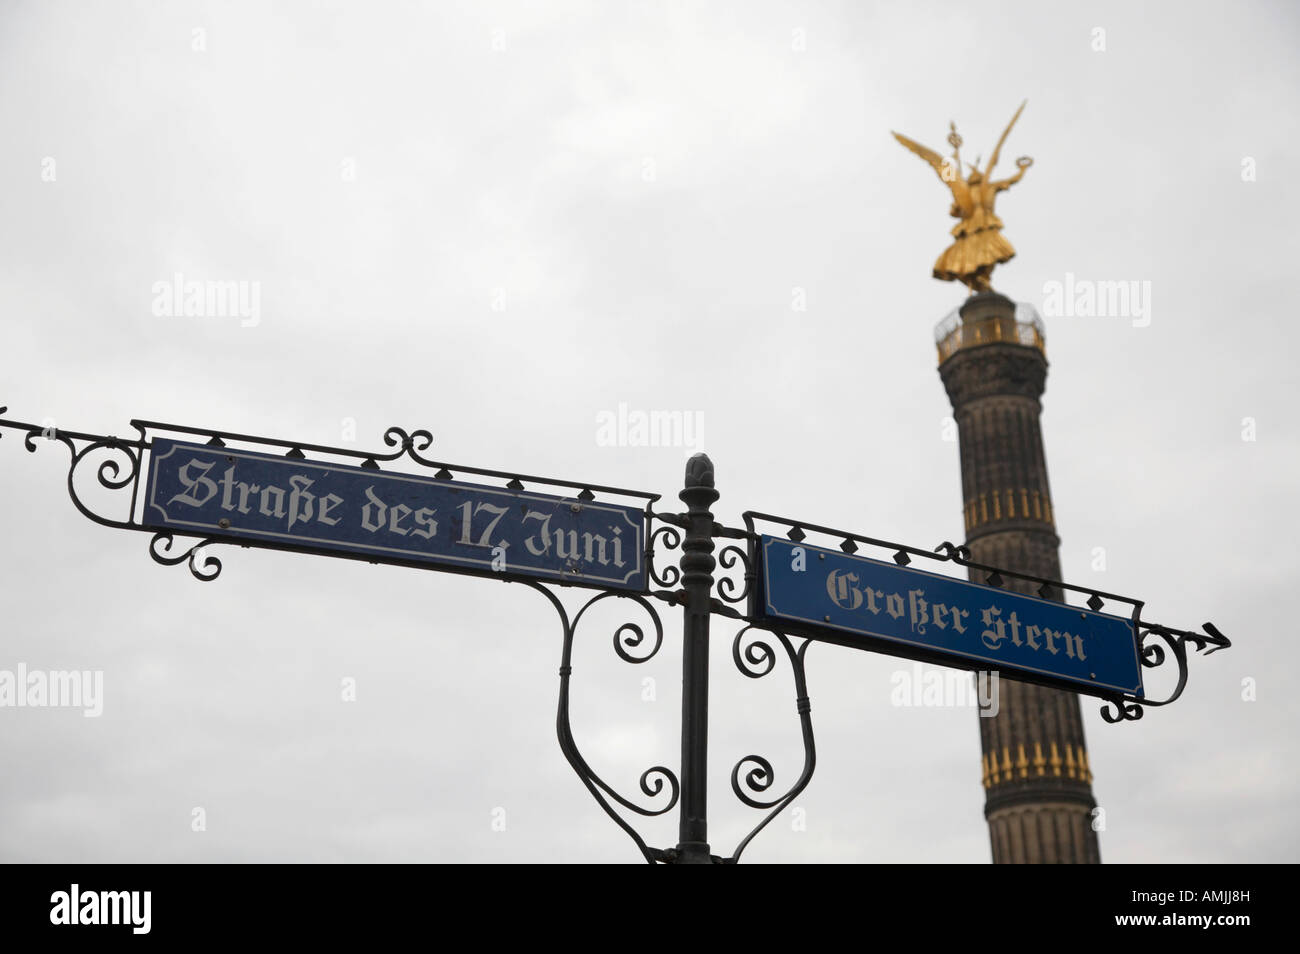 Berliner Sieg Spalte Siegessäule hinter Straßenschilder für Straße des 17 Juni und Grosser Stern Berlin Deutschland Stockfoto